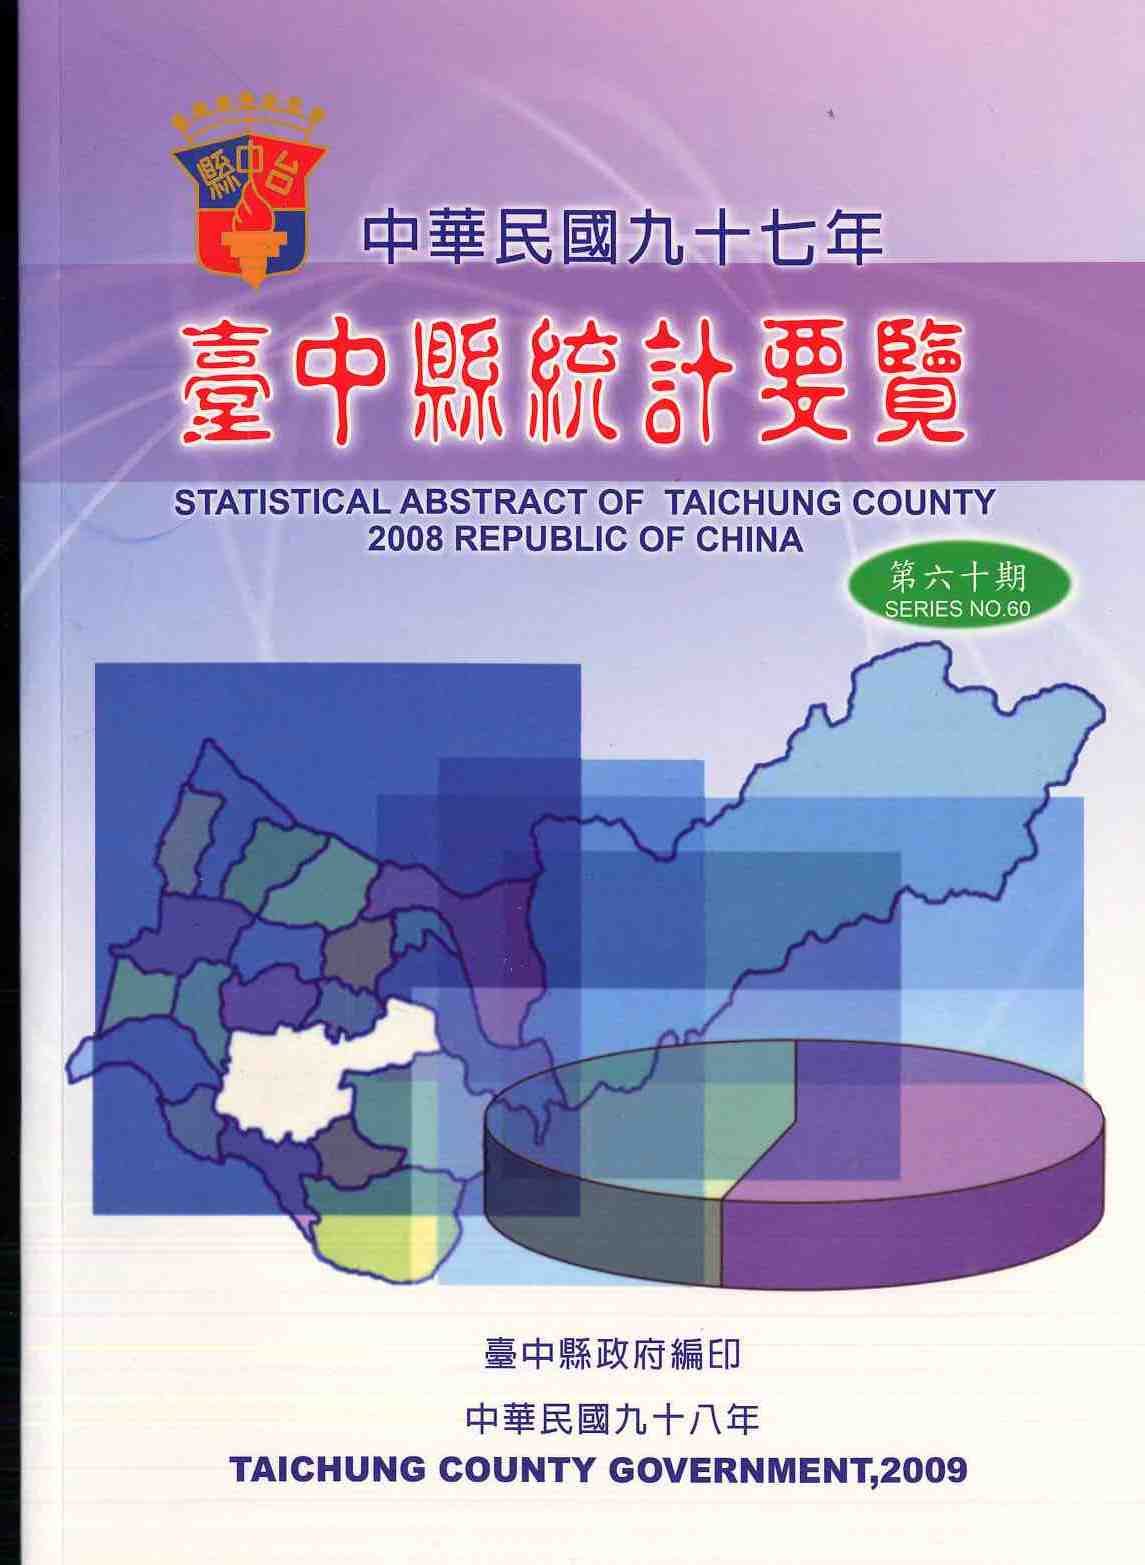 中華民國九十七年臺中縣統計要覽第六十期